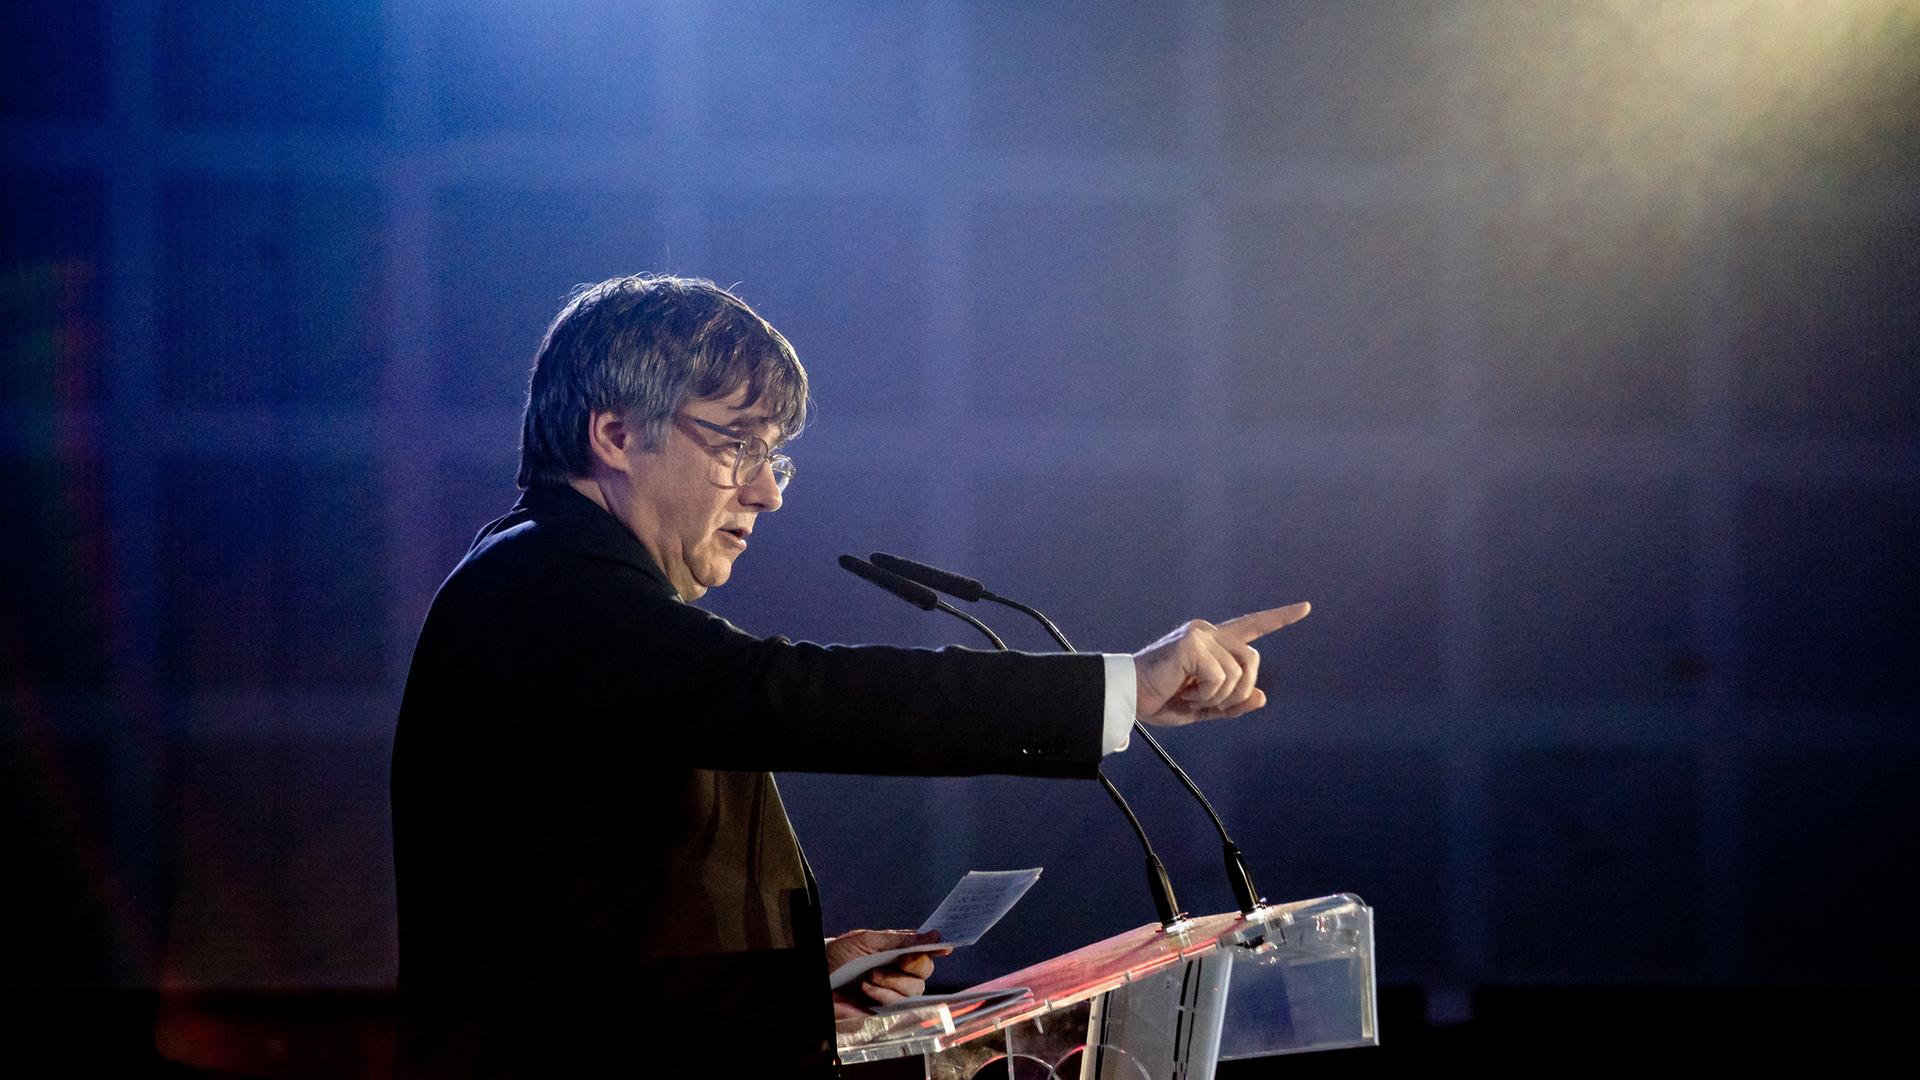 Der ehemalige katalanische Präsident Carles Puigdemont hält eine Rede während einer Kundgebung in Argeliers de Marenda (Frankreich) vor den katalanischen Regionalwahlen, die am 12. Mai stattfinden werden. 